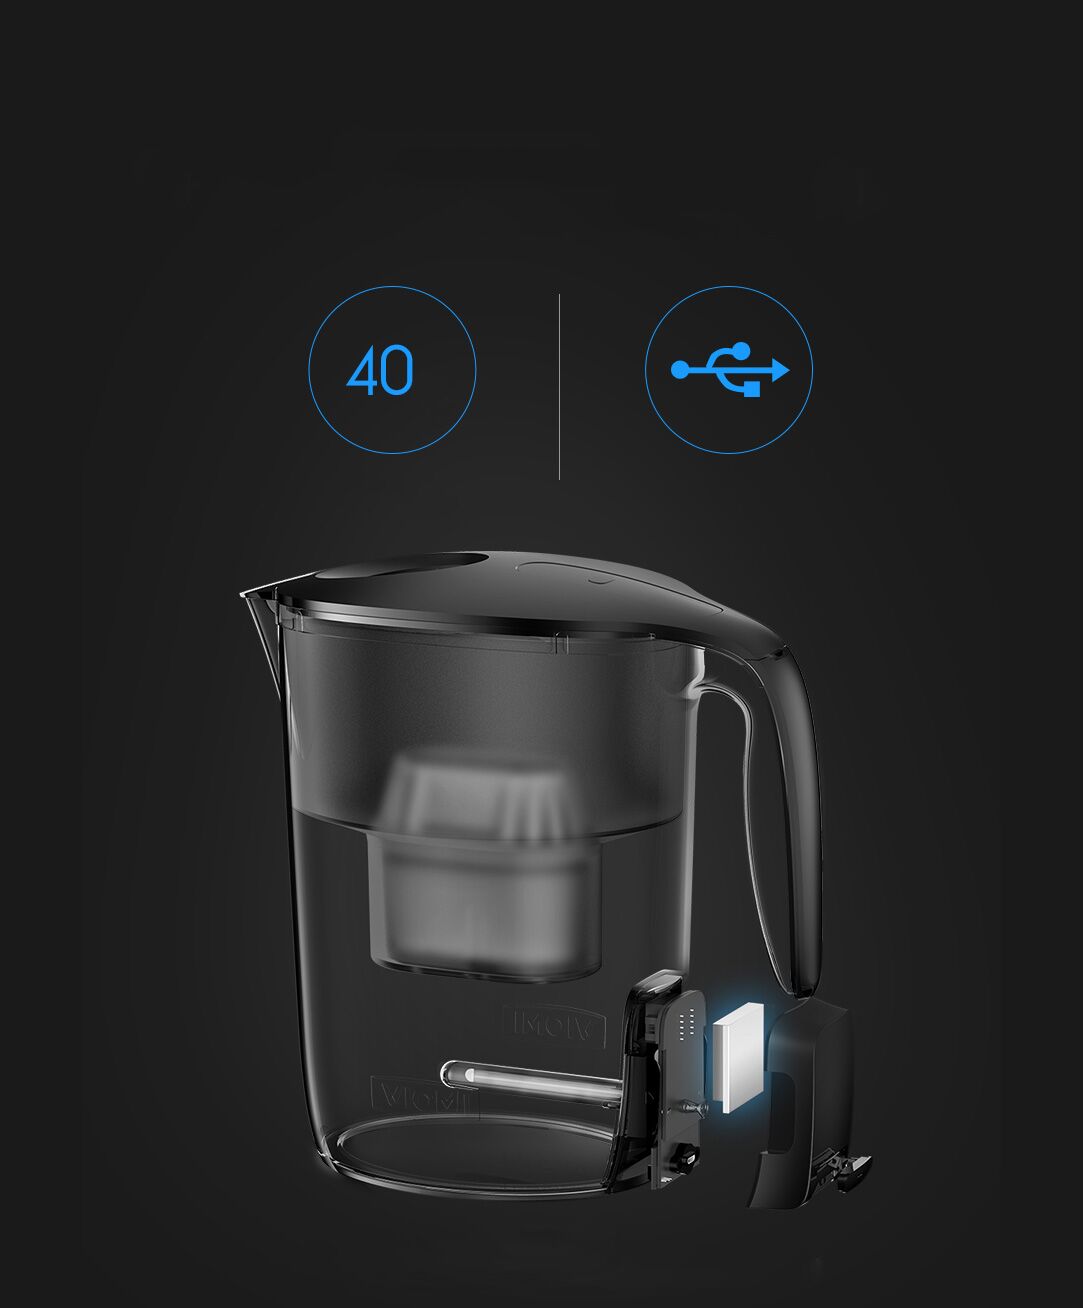 Xiaomi Viomi Filter Kettle - УФ лампы хватает на 40 цыклов очистки воды